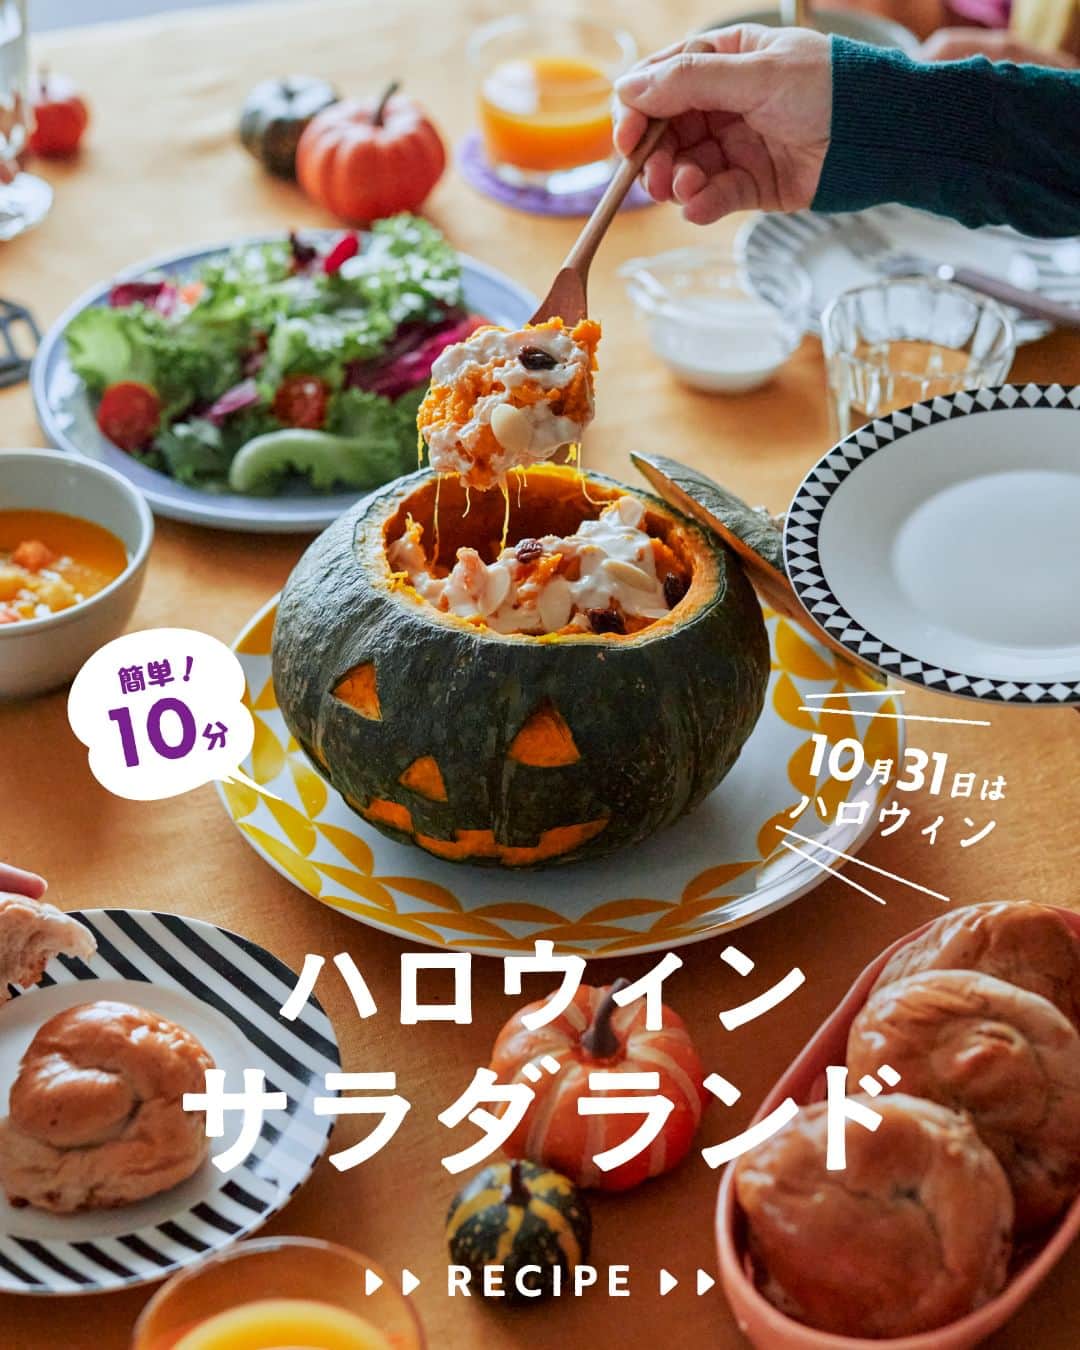 cooking_ajinomotoのインスタグラム：「作ってみたいと思ったら【❤️】の絵文字でコメントしてくださいね。  ✔️ハロウィンサラダランド：⏱10分（時間外を除く） ハロウィンパーティーにぴったりの かぼちゃを1個丸ごと使ったかぼちゃサラダ。 かぼちゃの甘味とシーザードレッシングの味わいは相性抜群です。  詳しいレシピは、スワイプして2枚目以降の画像をCHECK🔎 保存ボタンをタップして、ぜひ作ってみてくださいね。  *** たべる楽しさを、もっと 作る楽しさを、もっと 「AJINOMOTO PARK」 インスタグラムでは いつも生活の中心にある “食”を通じて毎日を明るく 楽しくするレシピを投稿しています🍳 ***  #味の素パークレシピ #ajinomotopark #おいしいねは笑顔の素 #簡単レシピ #時短レシピ #お手軽レシピ #ハロウィンレシピ #ハロウィン料理 #かぼちゃ #かぼちゃレシピ #かぼちゃ料理 #かぼちゃサラダ #サラダレシピ #レシピあり #レシピ付き #レシピ公開 #レシピノート #ハロウィンパーティー #ハロウィンごはん #ハロウィンご飯 #ハロウィンメニュー #ハッピーハロウィン #お手軽料理 #お手軽ごはん #お手軽メニュー #レンチン料理 #レンチンレシピ #レンチン #電子レンジ調理 #電子レンジレシピ」